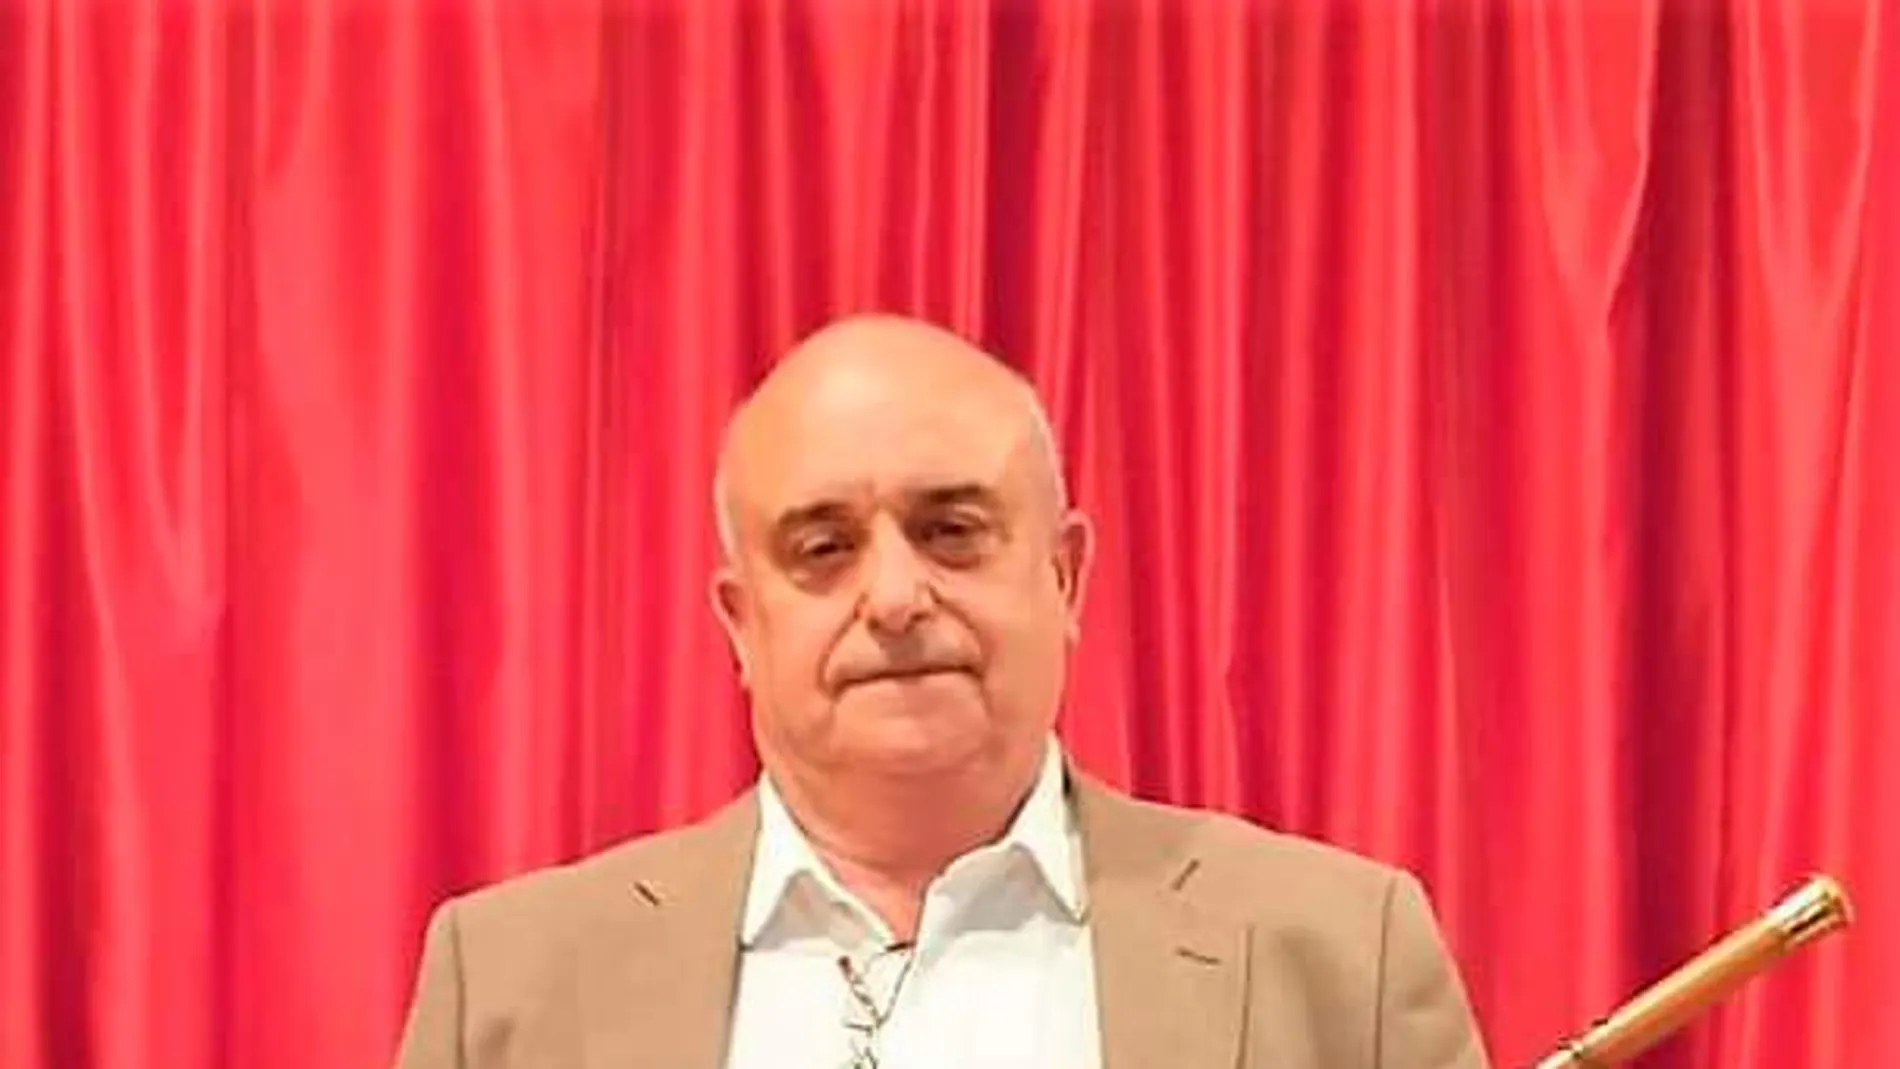 El alcalde de Callosa d’En Sarrià (Alicante), Andrés Molina (PP)